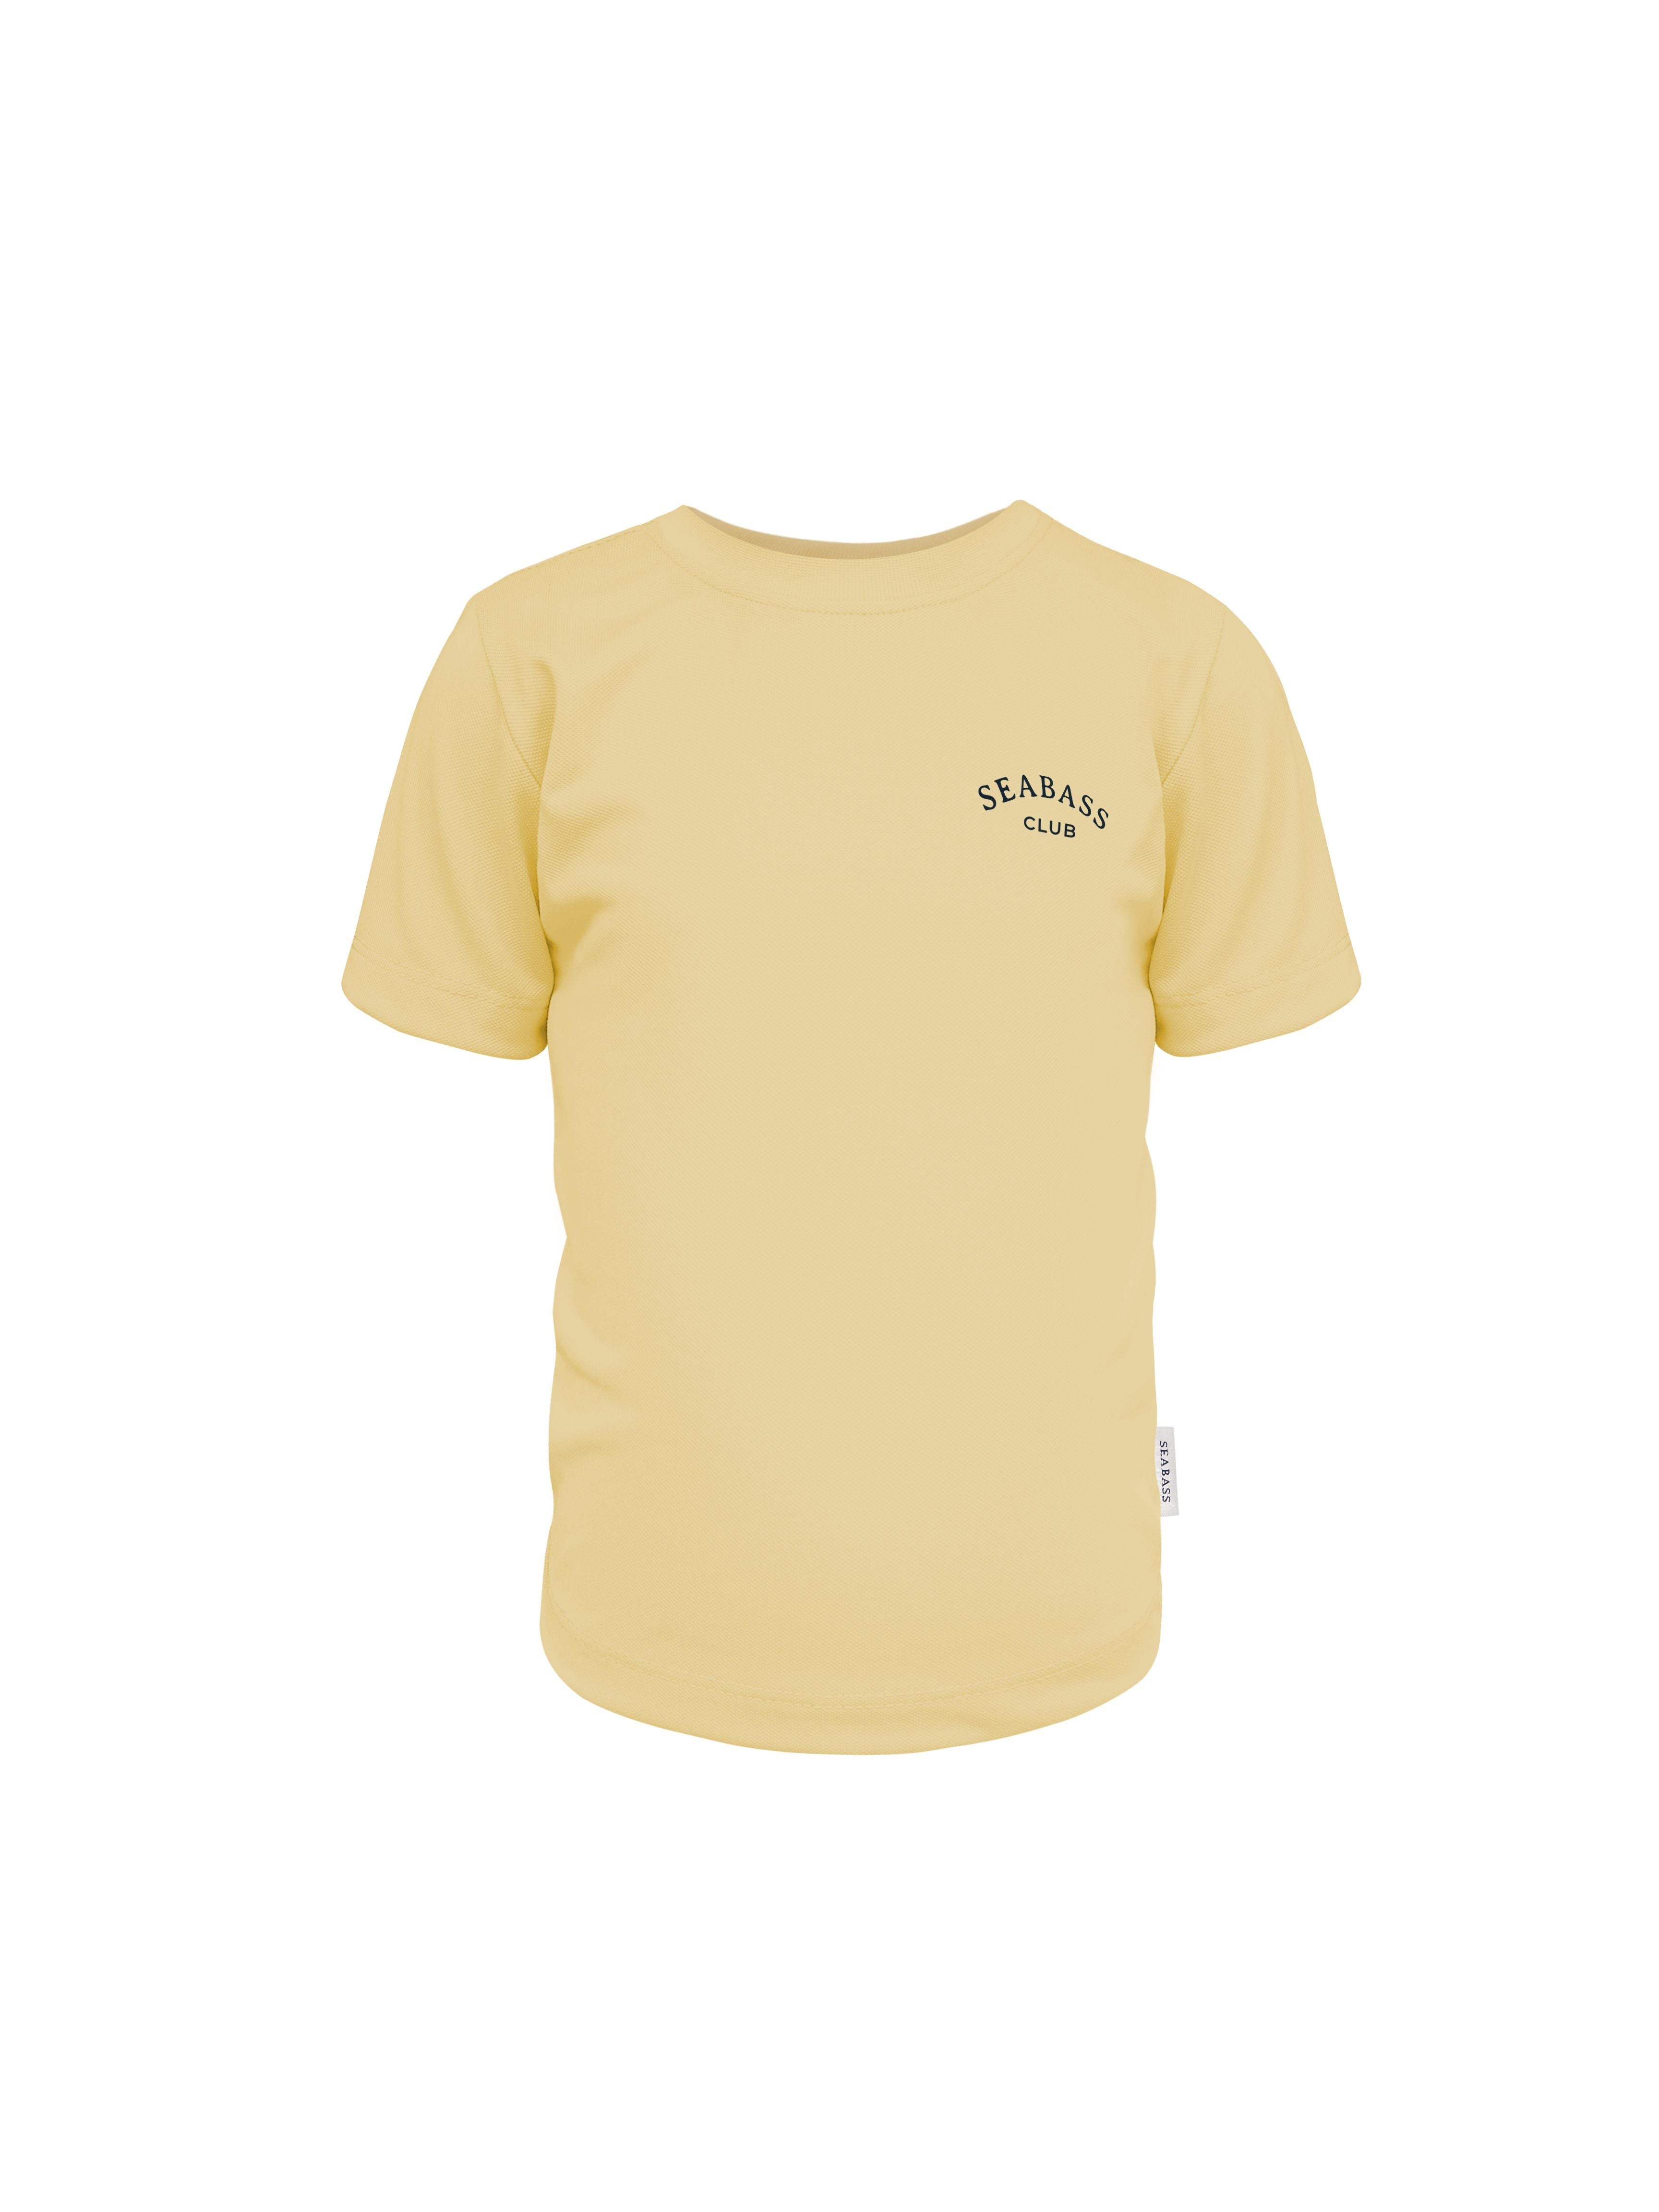 UV Schwimmset - Badeshort Leone und T-Shirt Weiches Gelb